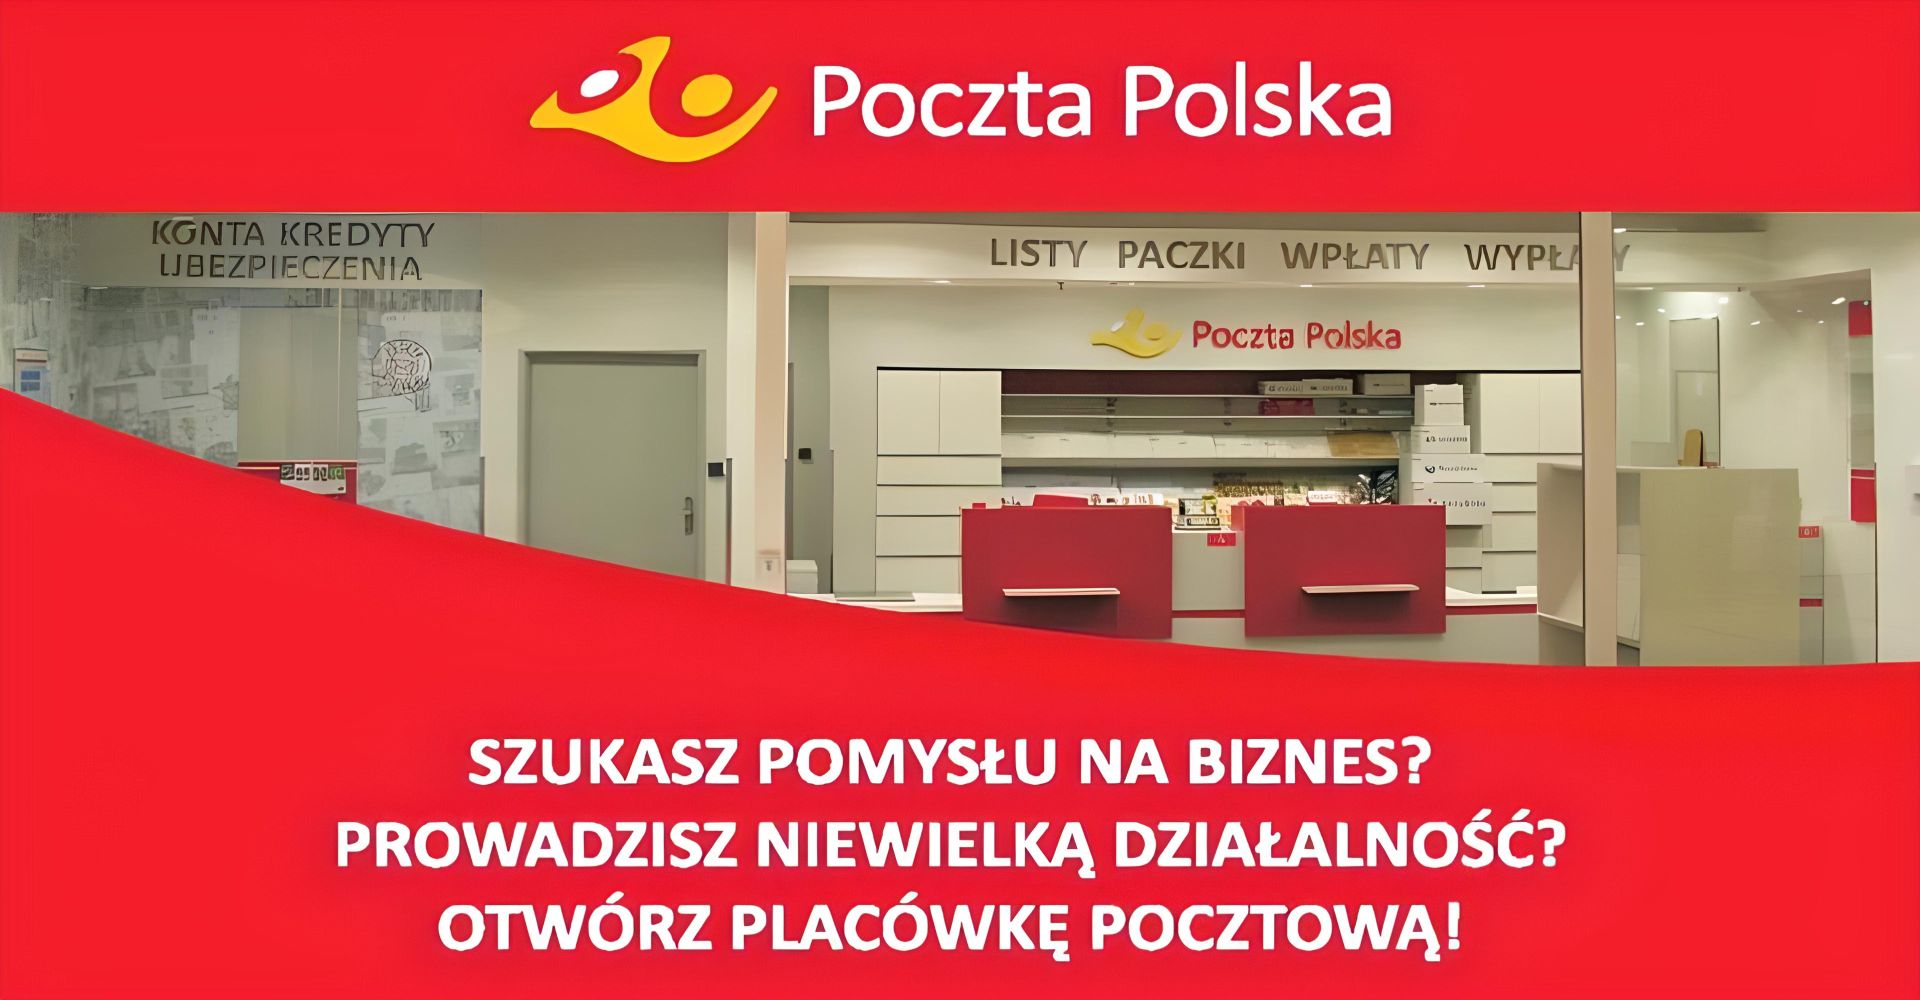 Poczta Polska zdjęcie zachęcające do otworzenia placówki pocztowej